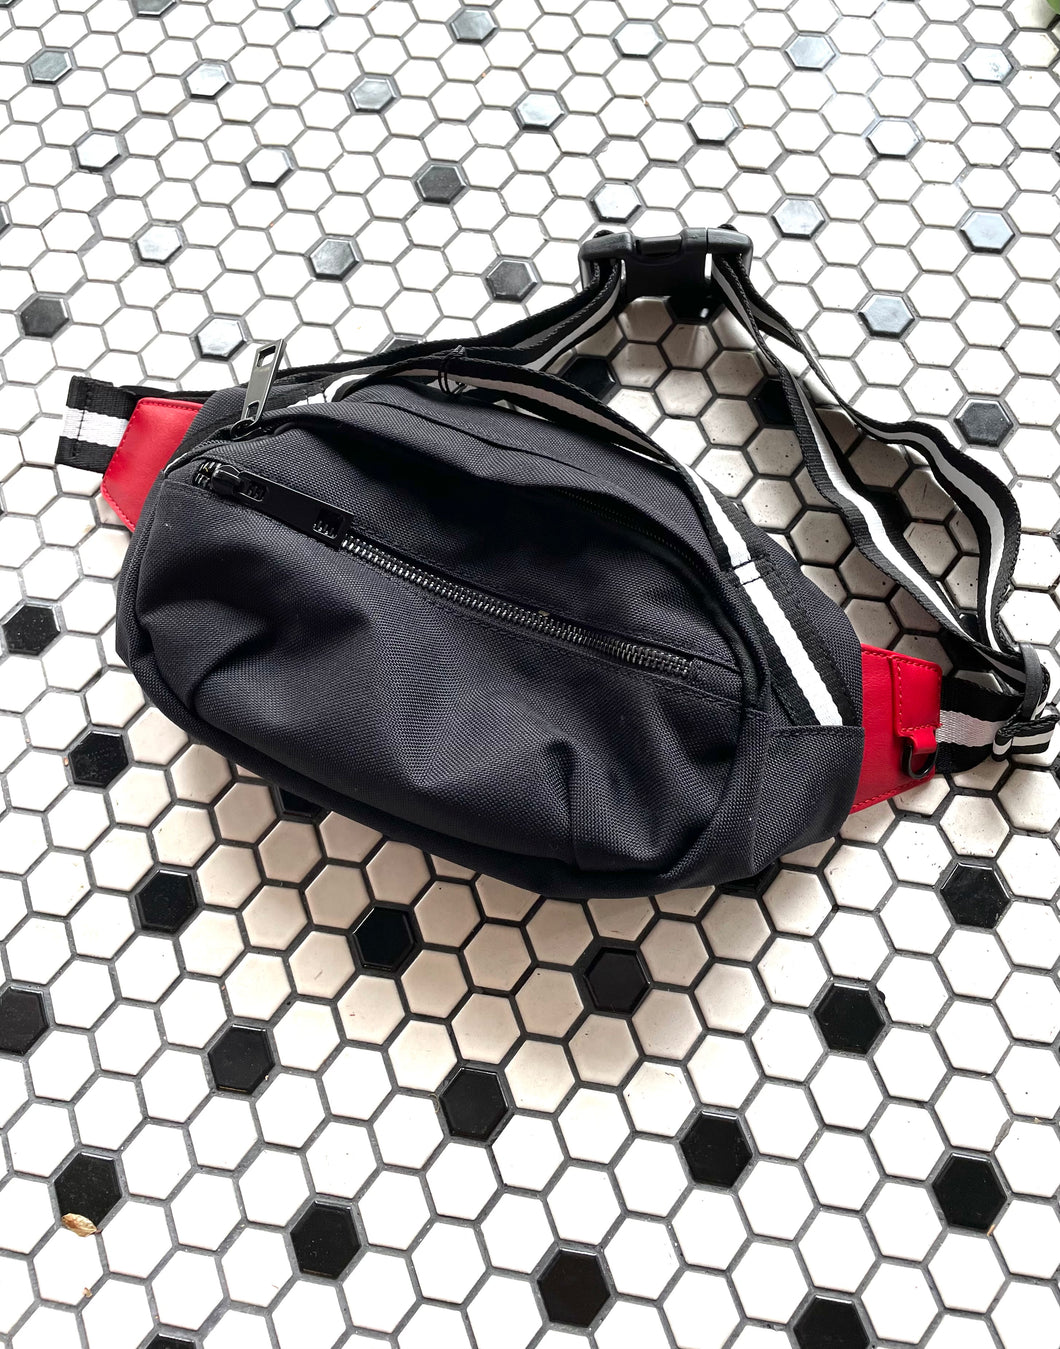 Chic Modern Waist Bag